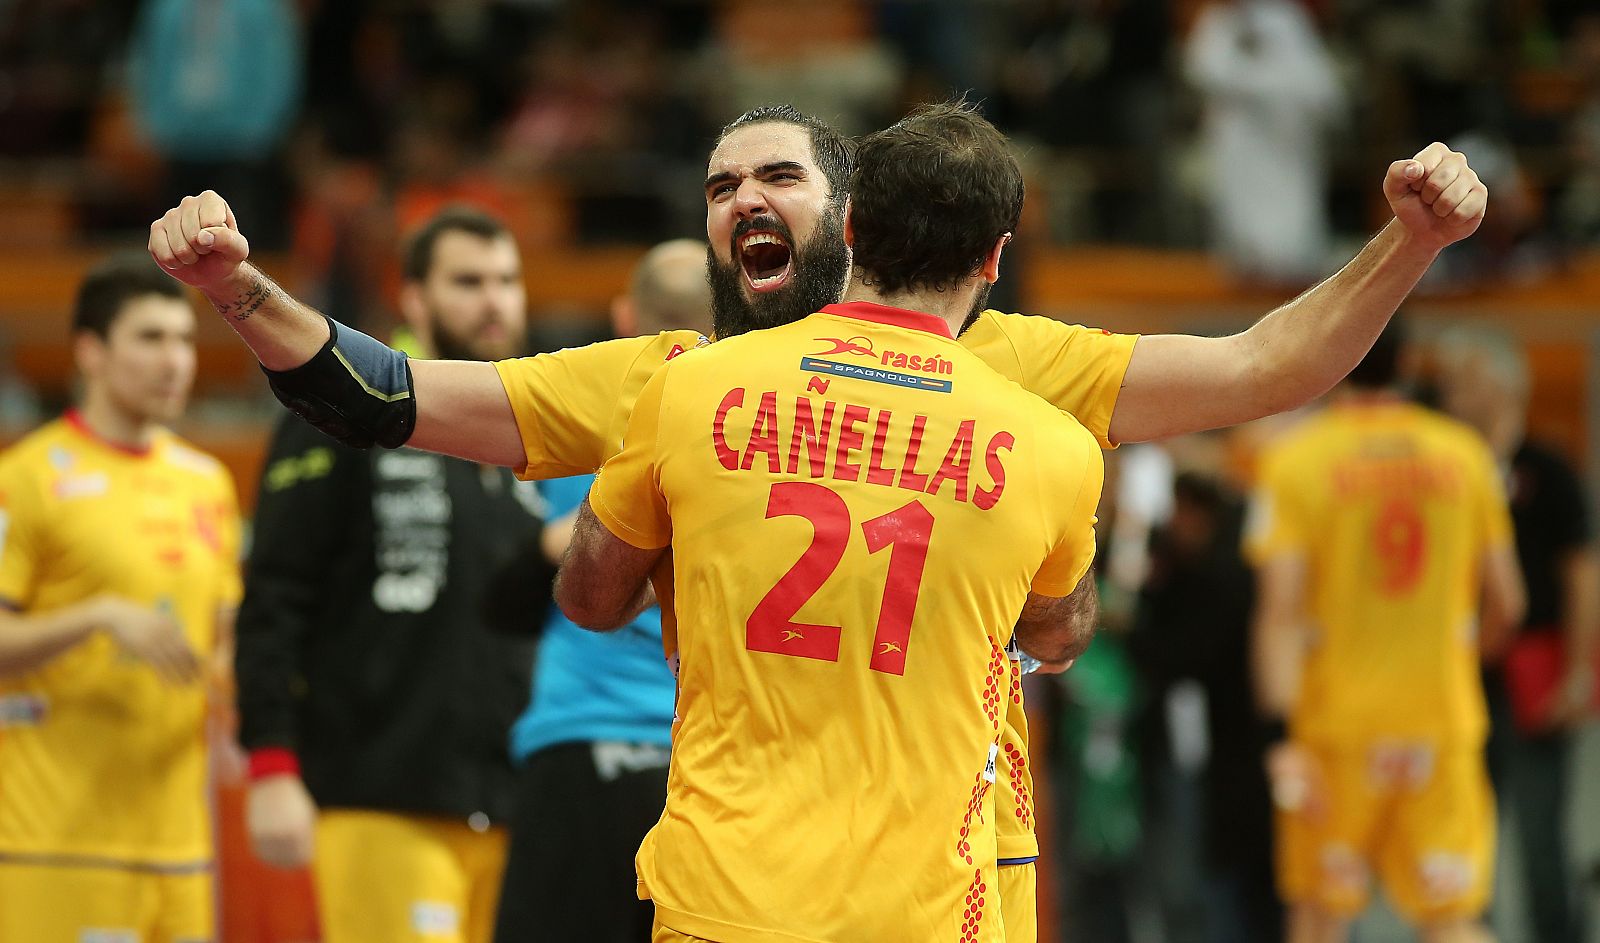 Jorge Maqueda y Joan Cañellas celebran la victoria frente a Catar.